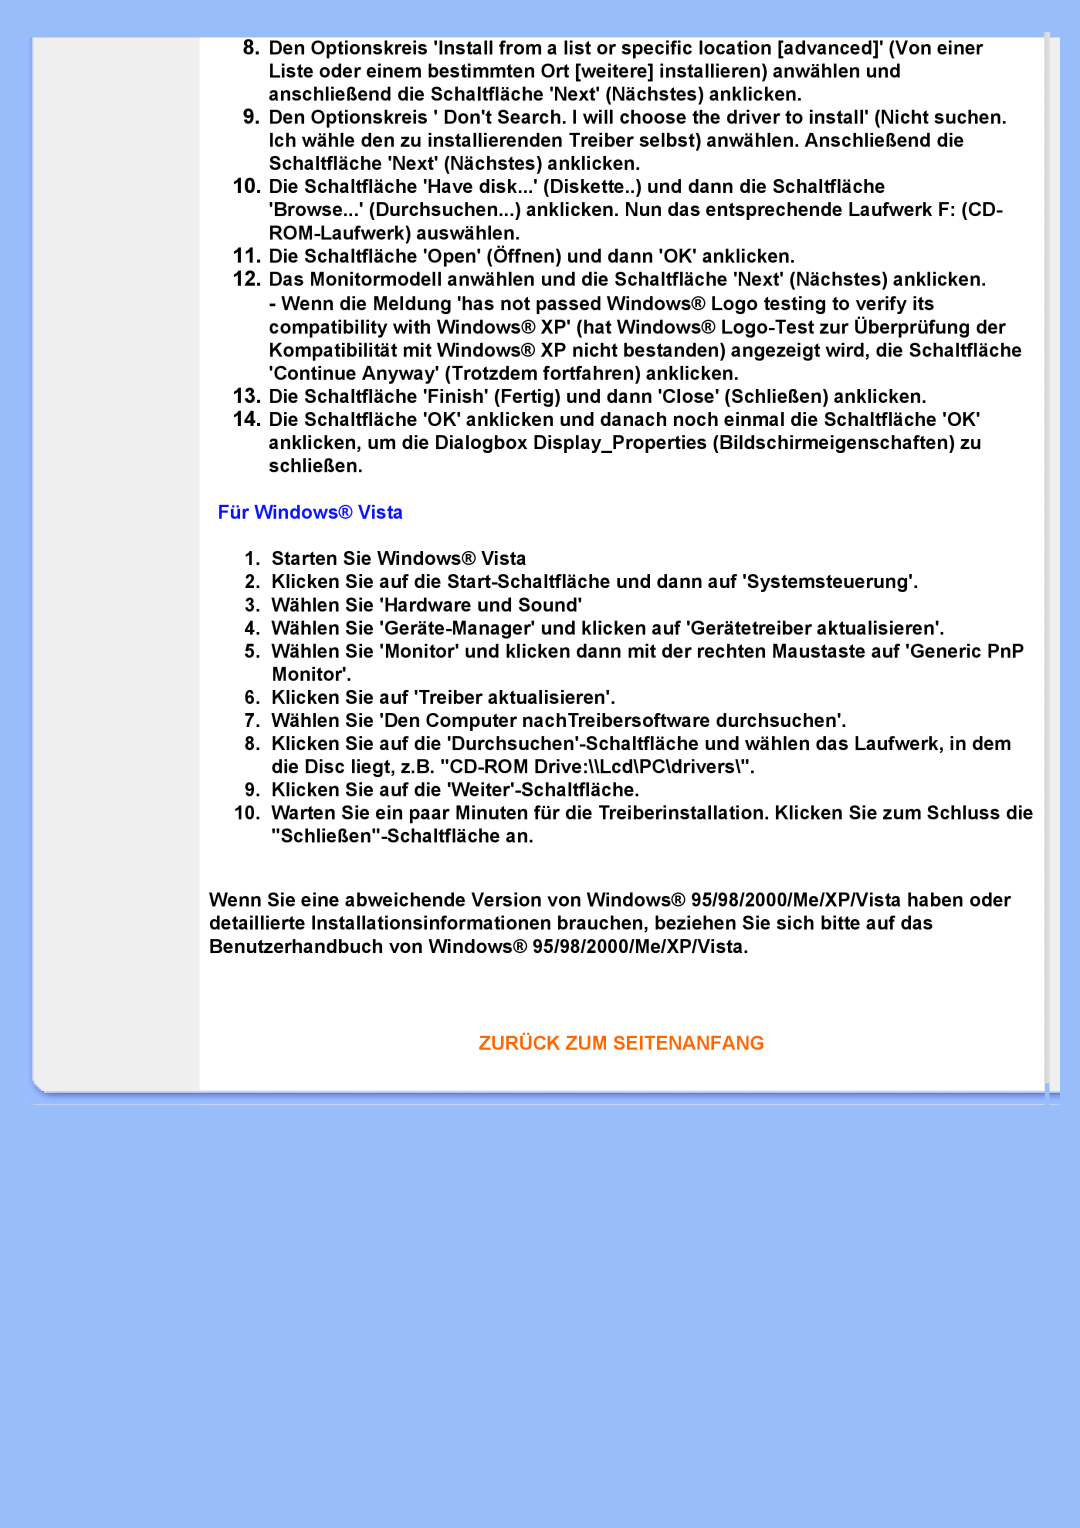 Philips 220VW8 user manual Für Windows Vista, Starten Sie Windows Vista, Zurück Zum Seitenanfang 